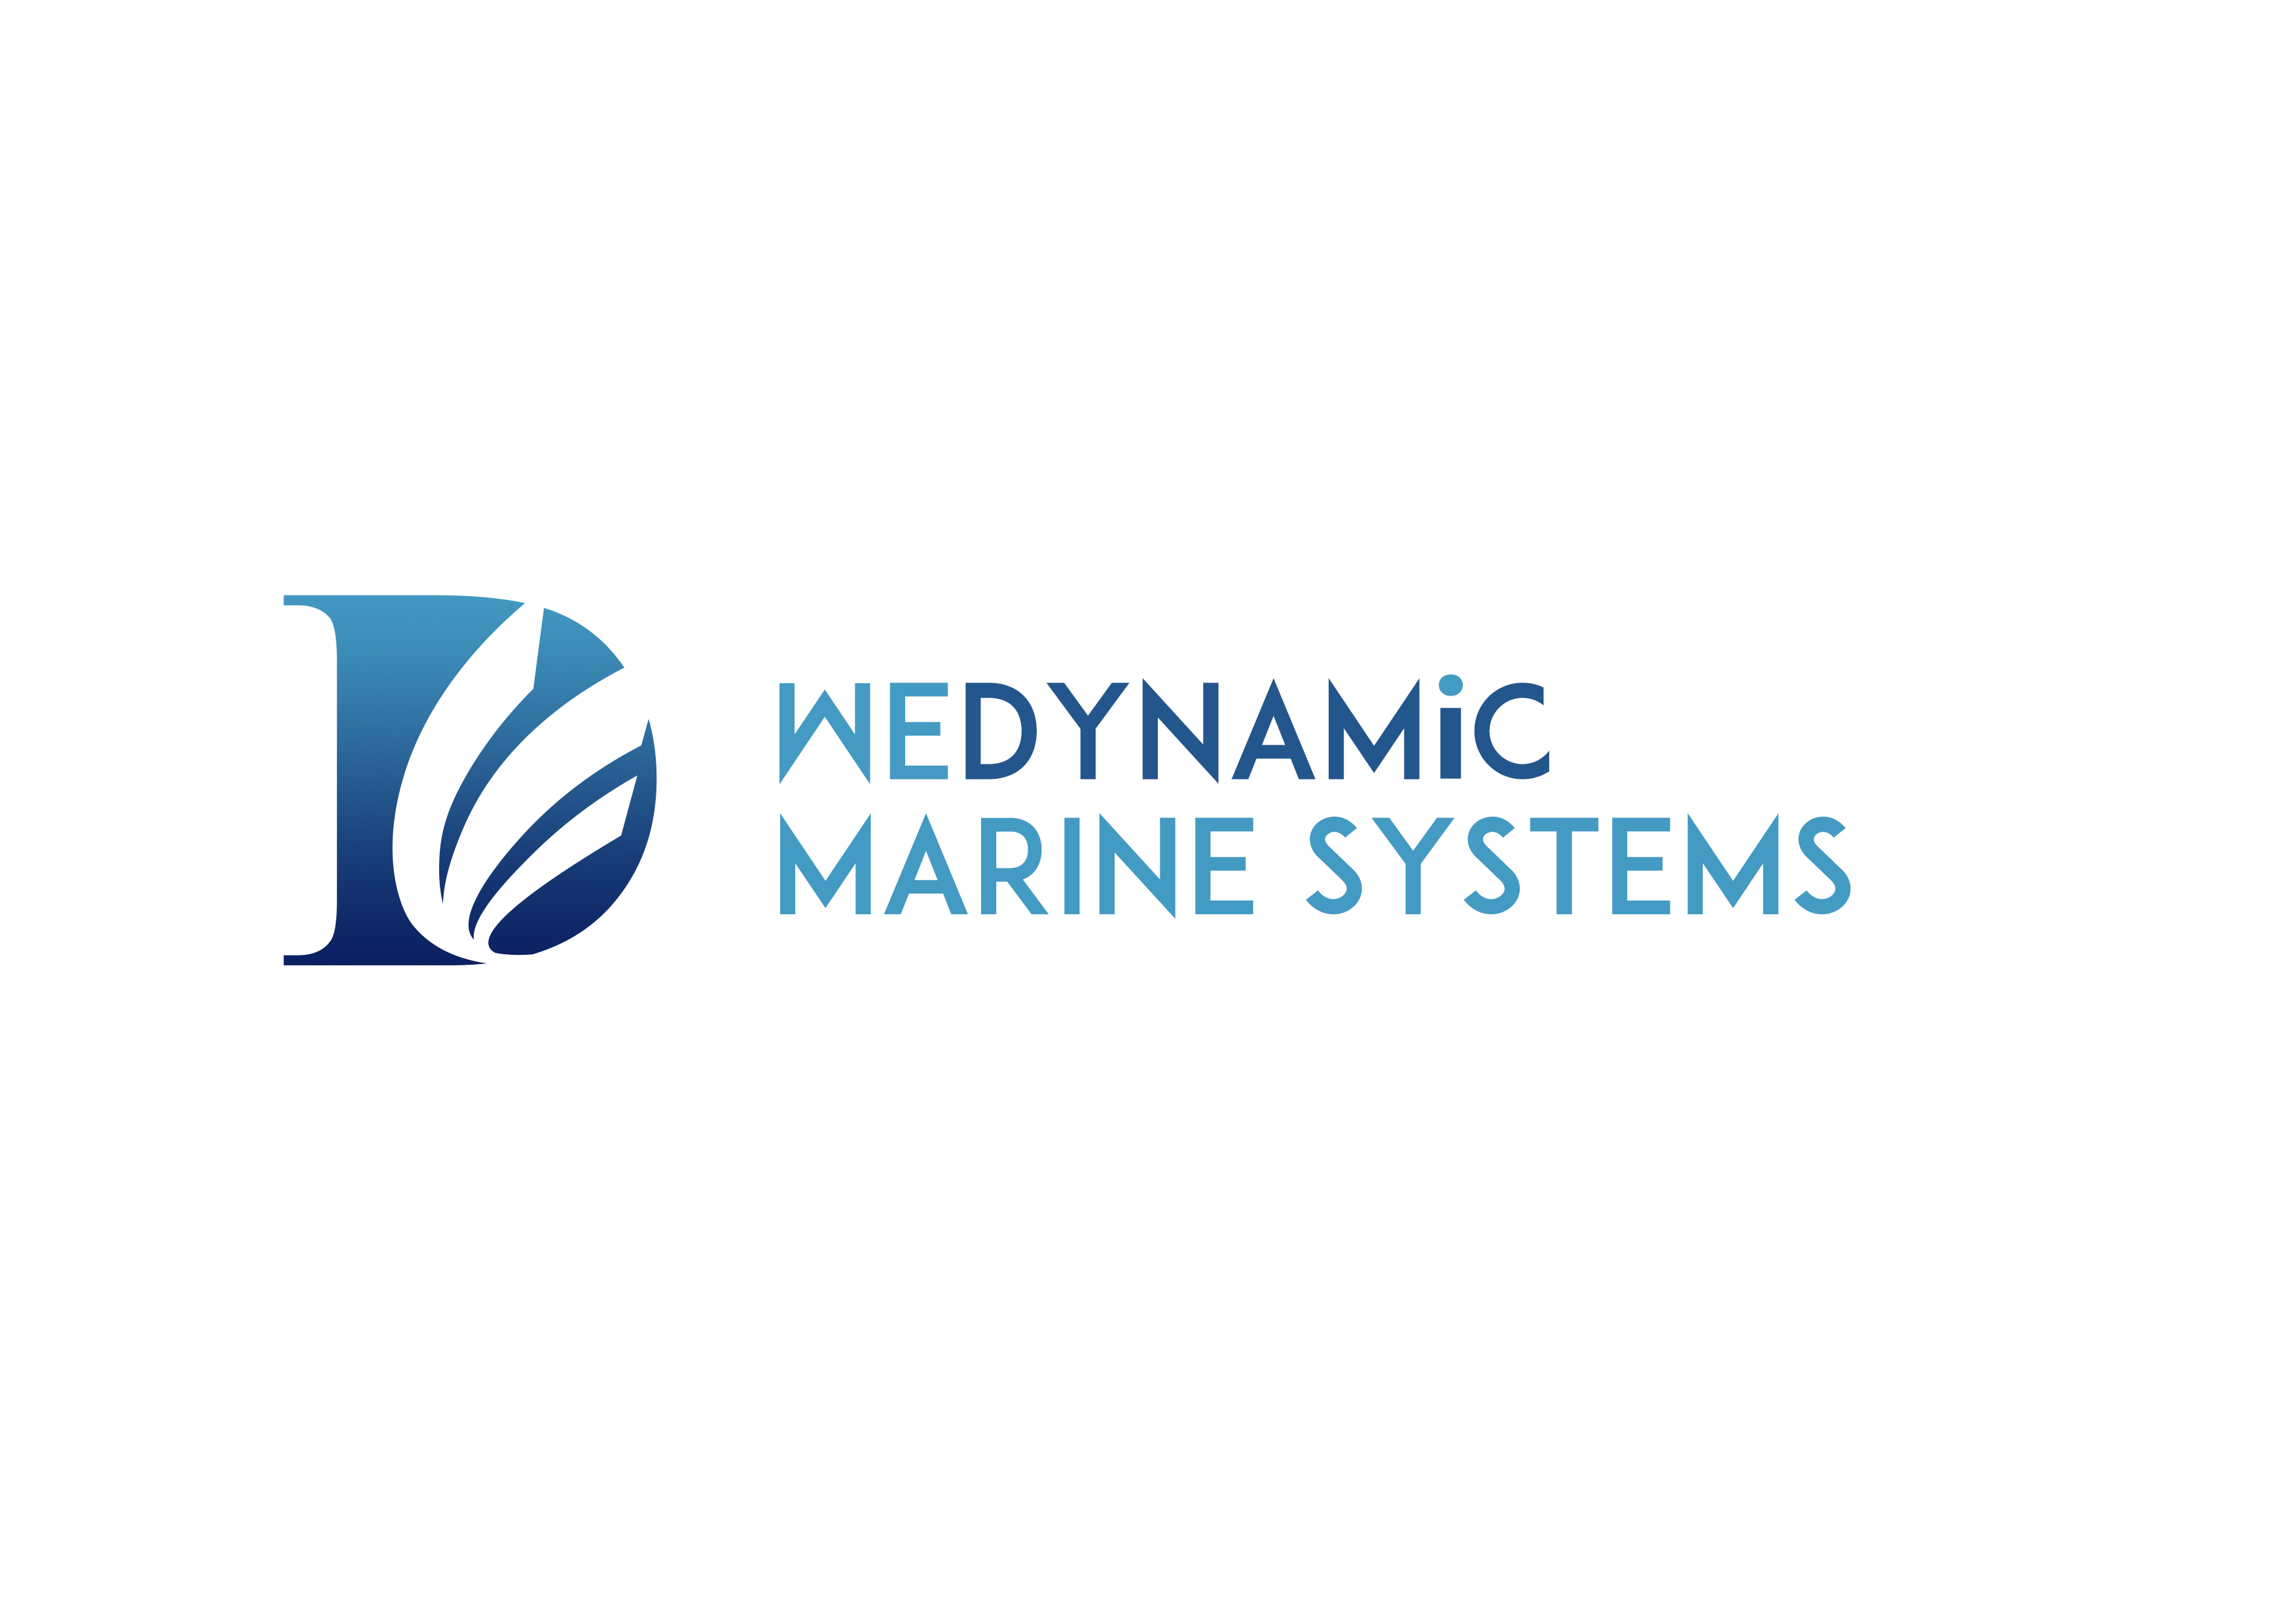 Wedynamic Marine Systems